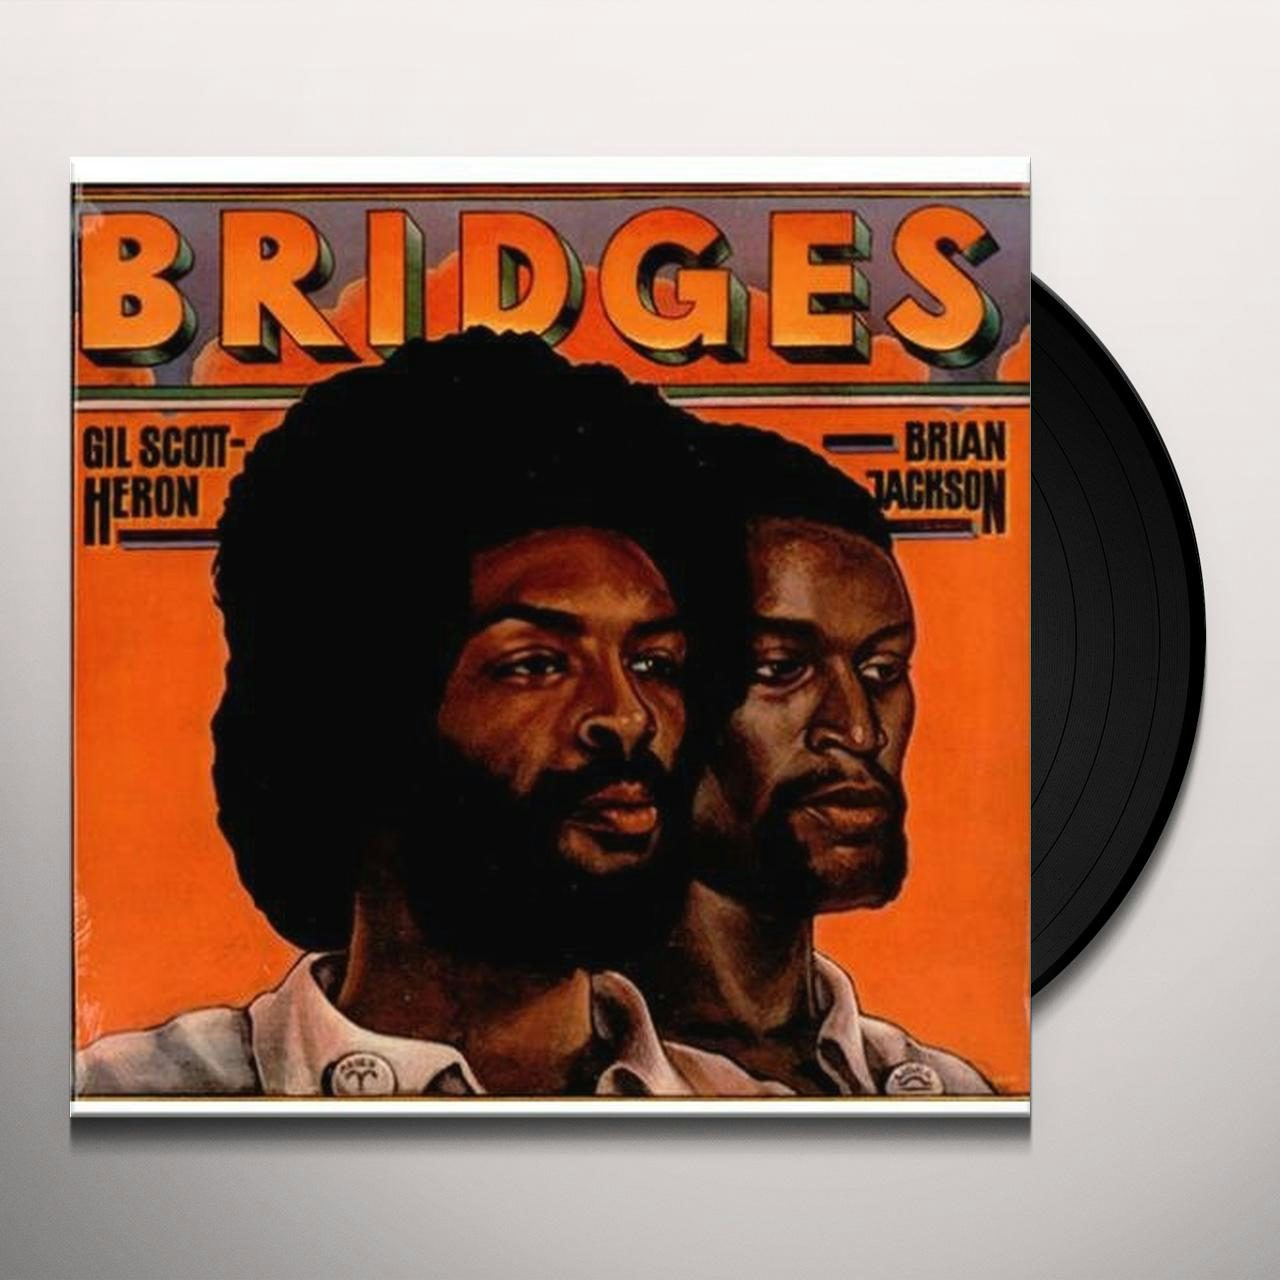 Gil Scott-Heron & Brian Jackson BRIDGES Vinyl Record